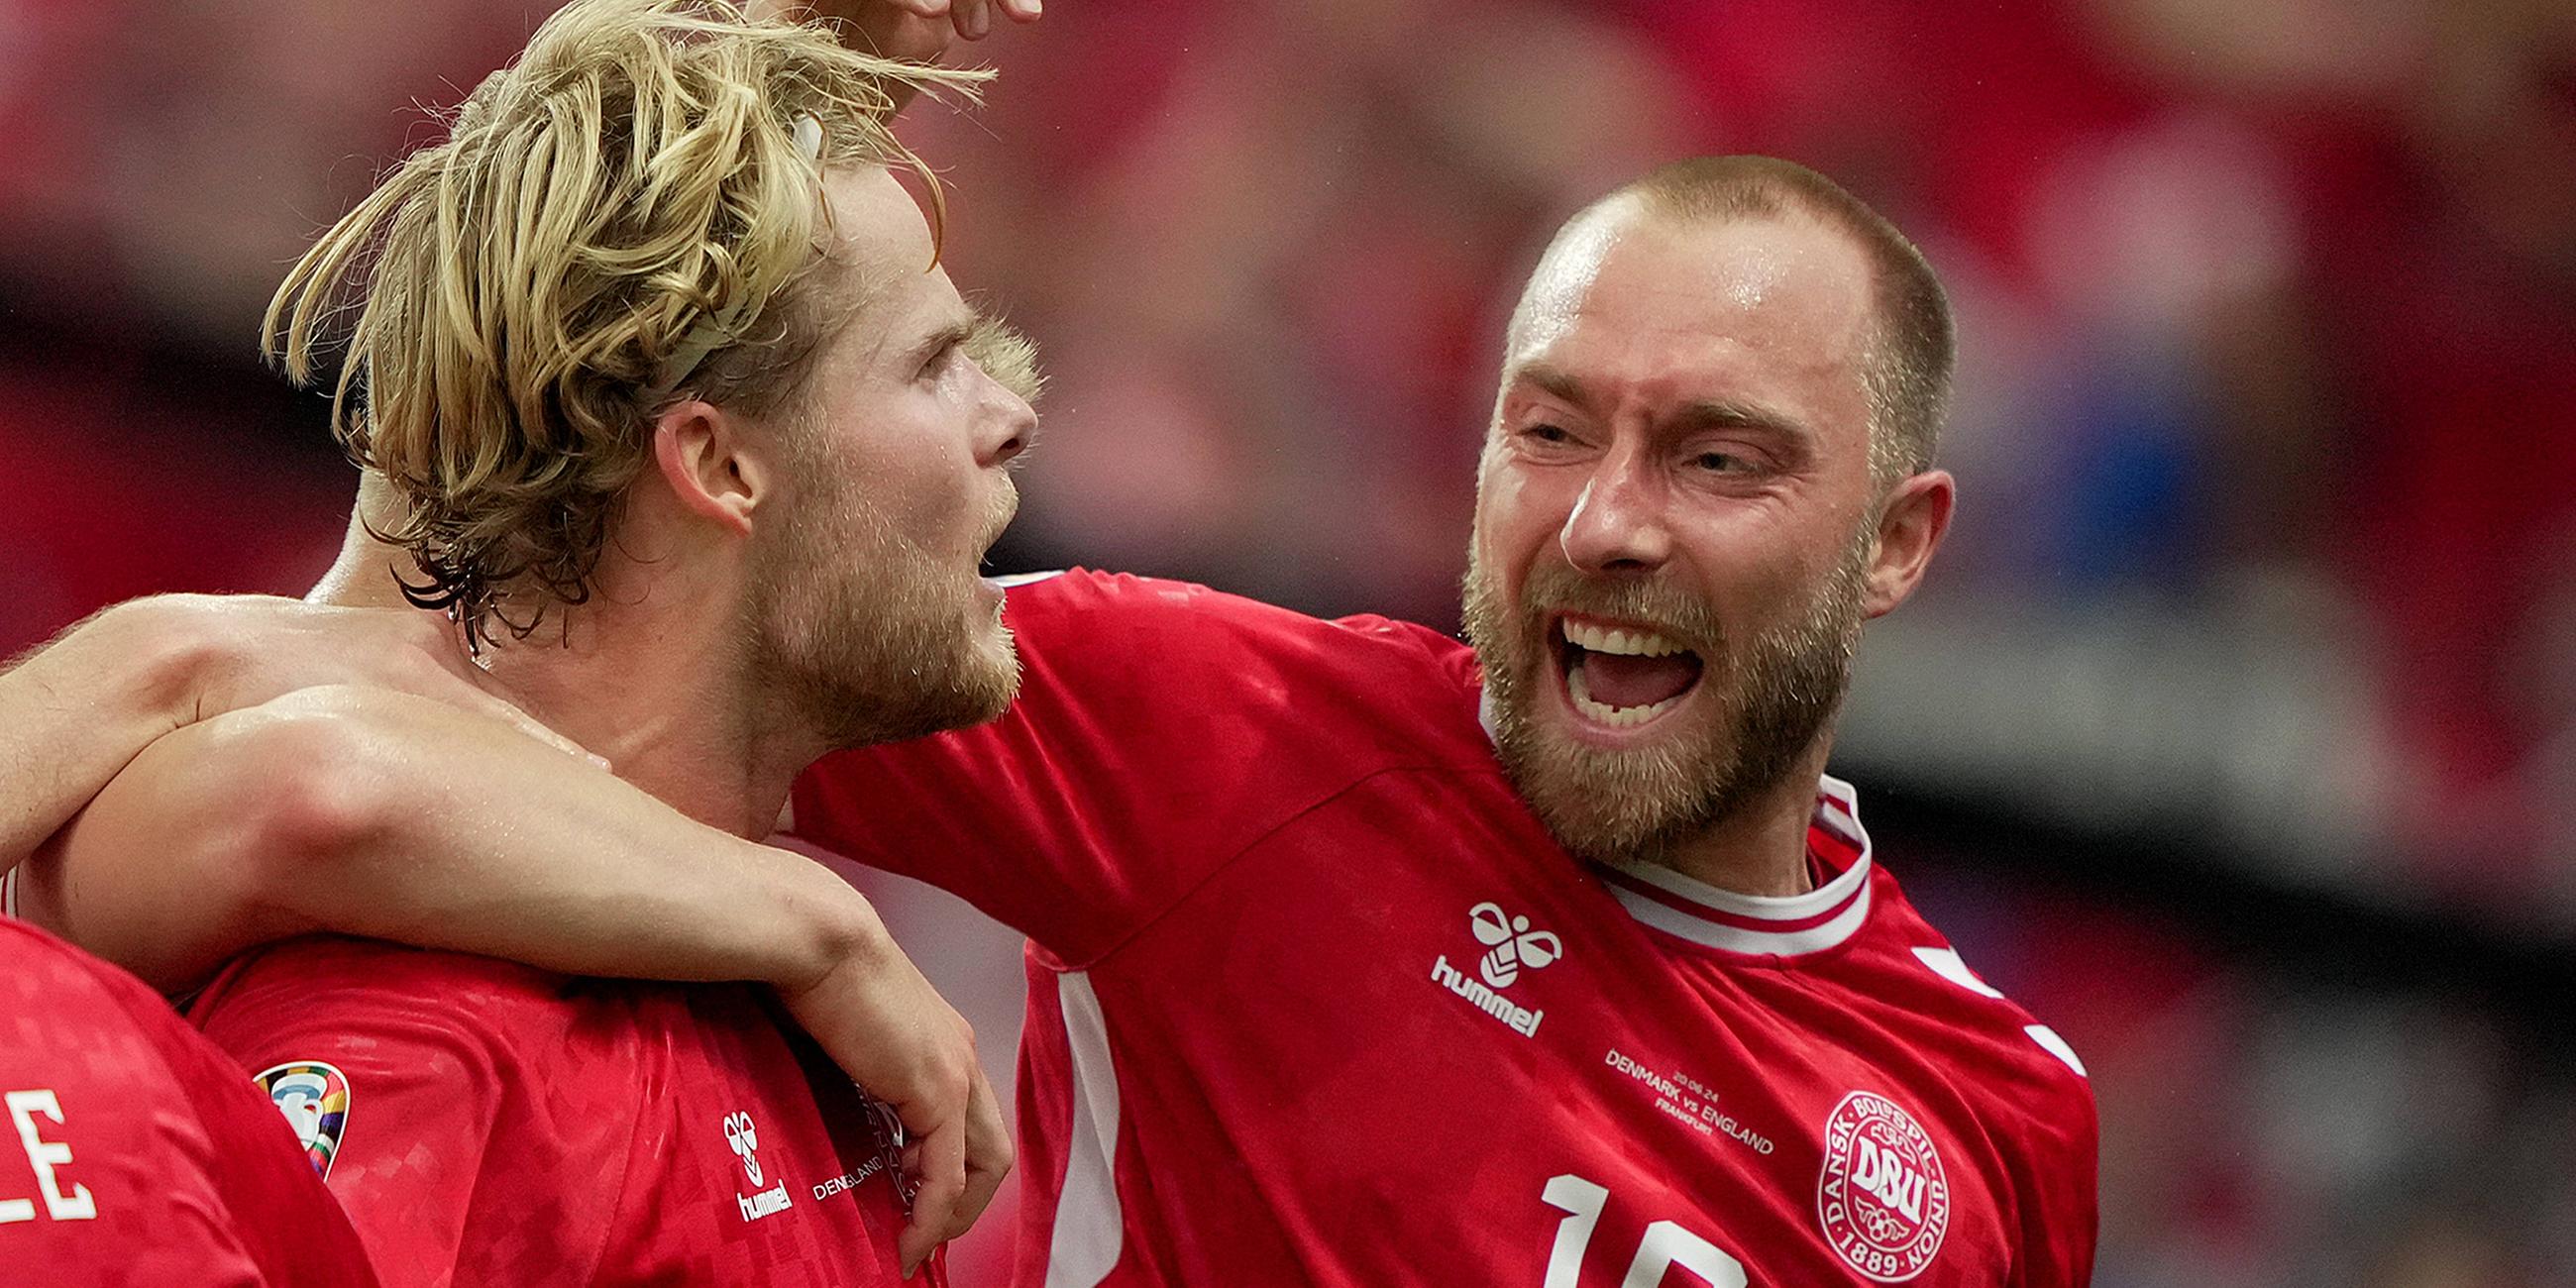 Dänemarks Morten Hjulmand feiert seinen Treffer gegen England